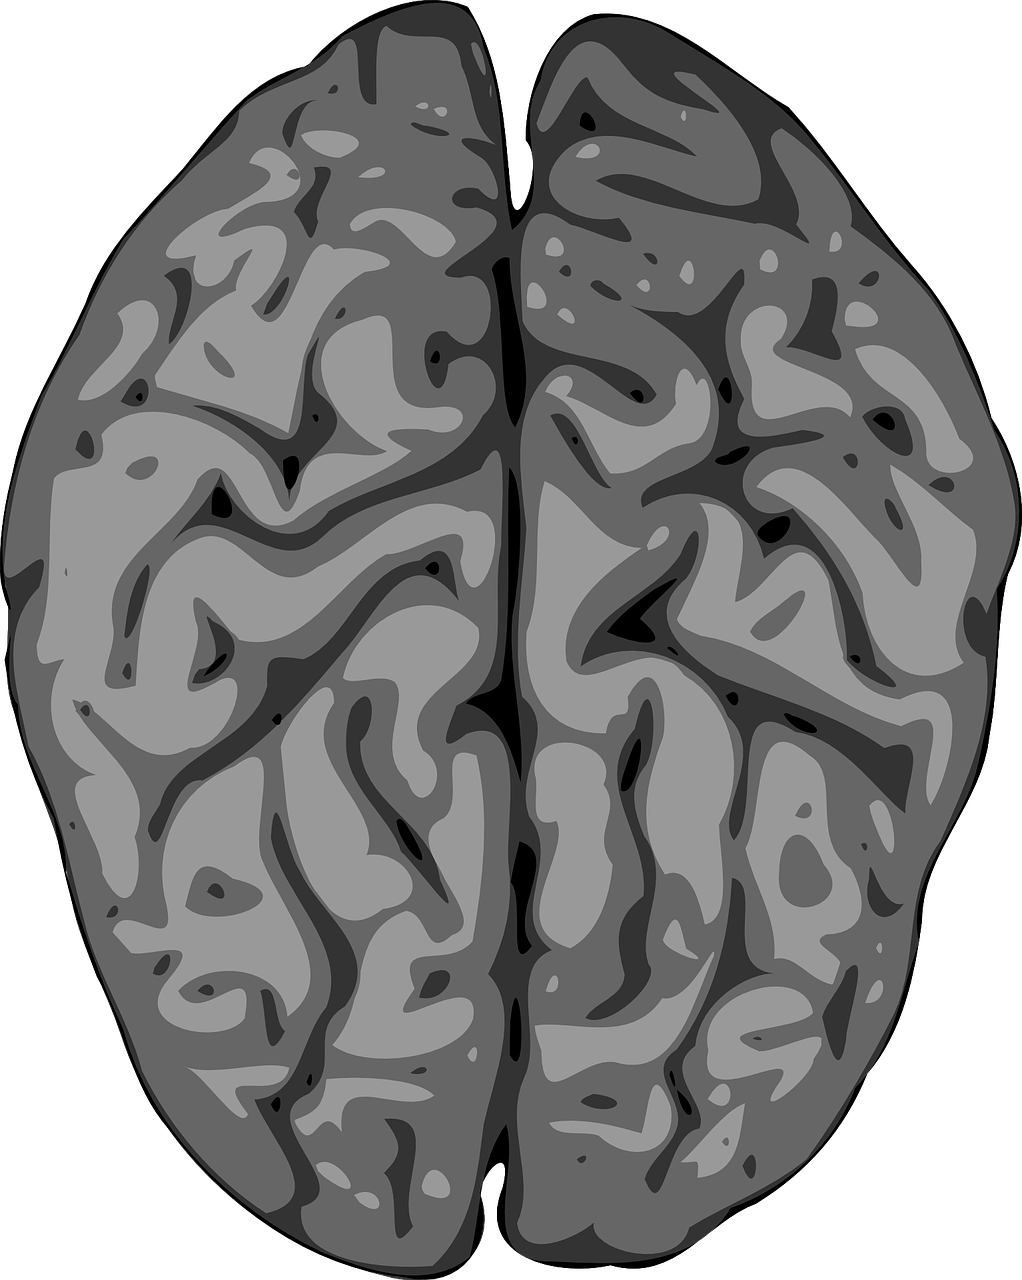 Smegenys, Smegenėlė, Žmogus, Anatomija, Žvalgyba, Neurologija, Organas, Smegenų, Nervingas, Galvos Smegenys